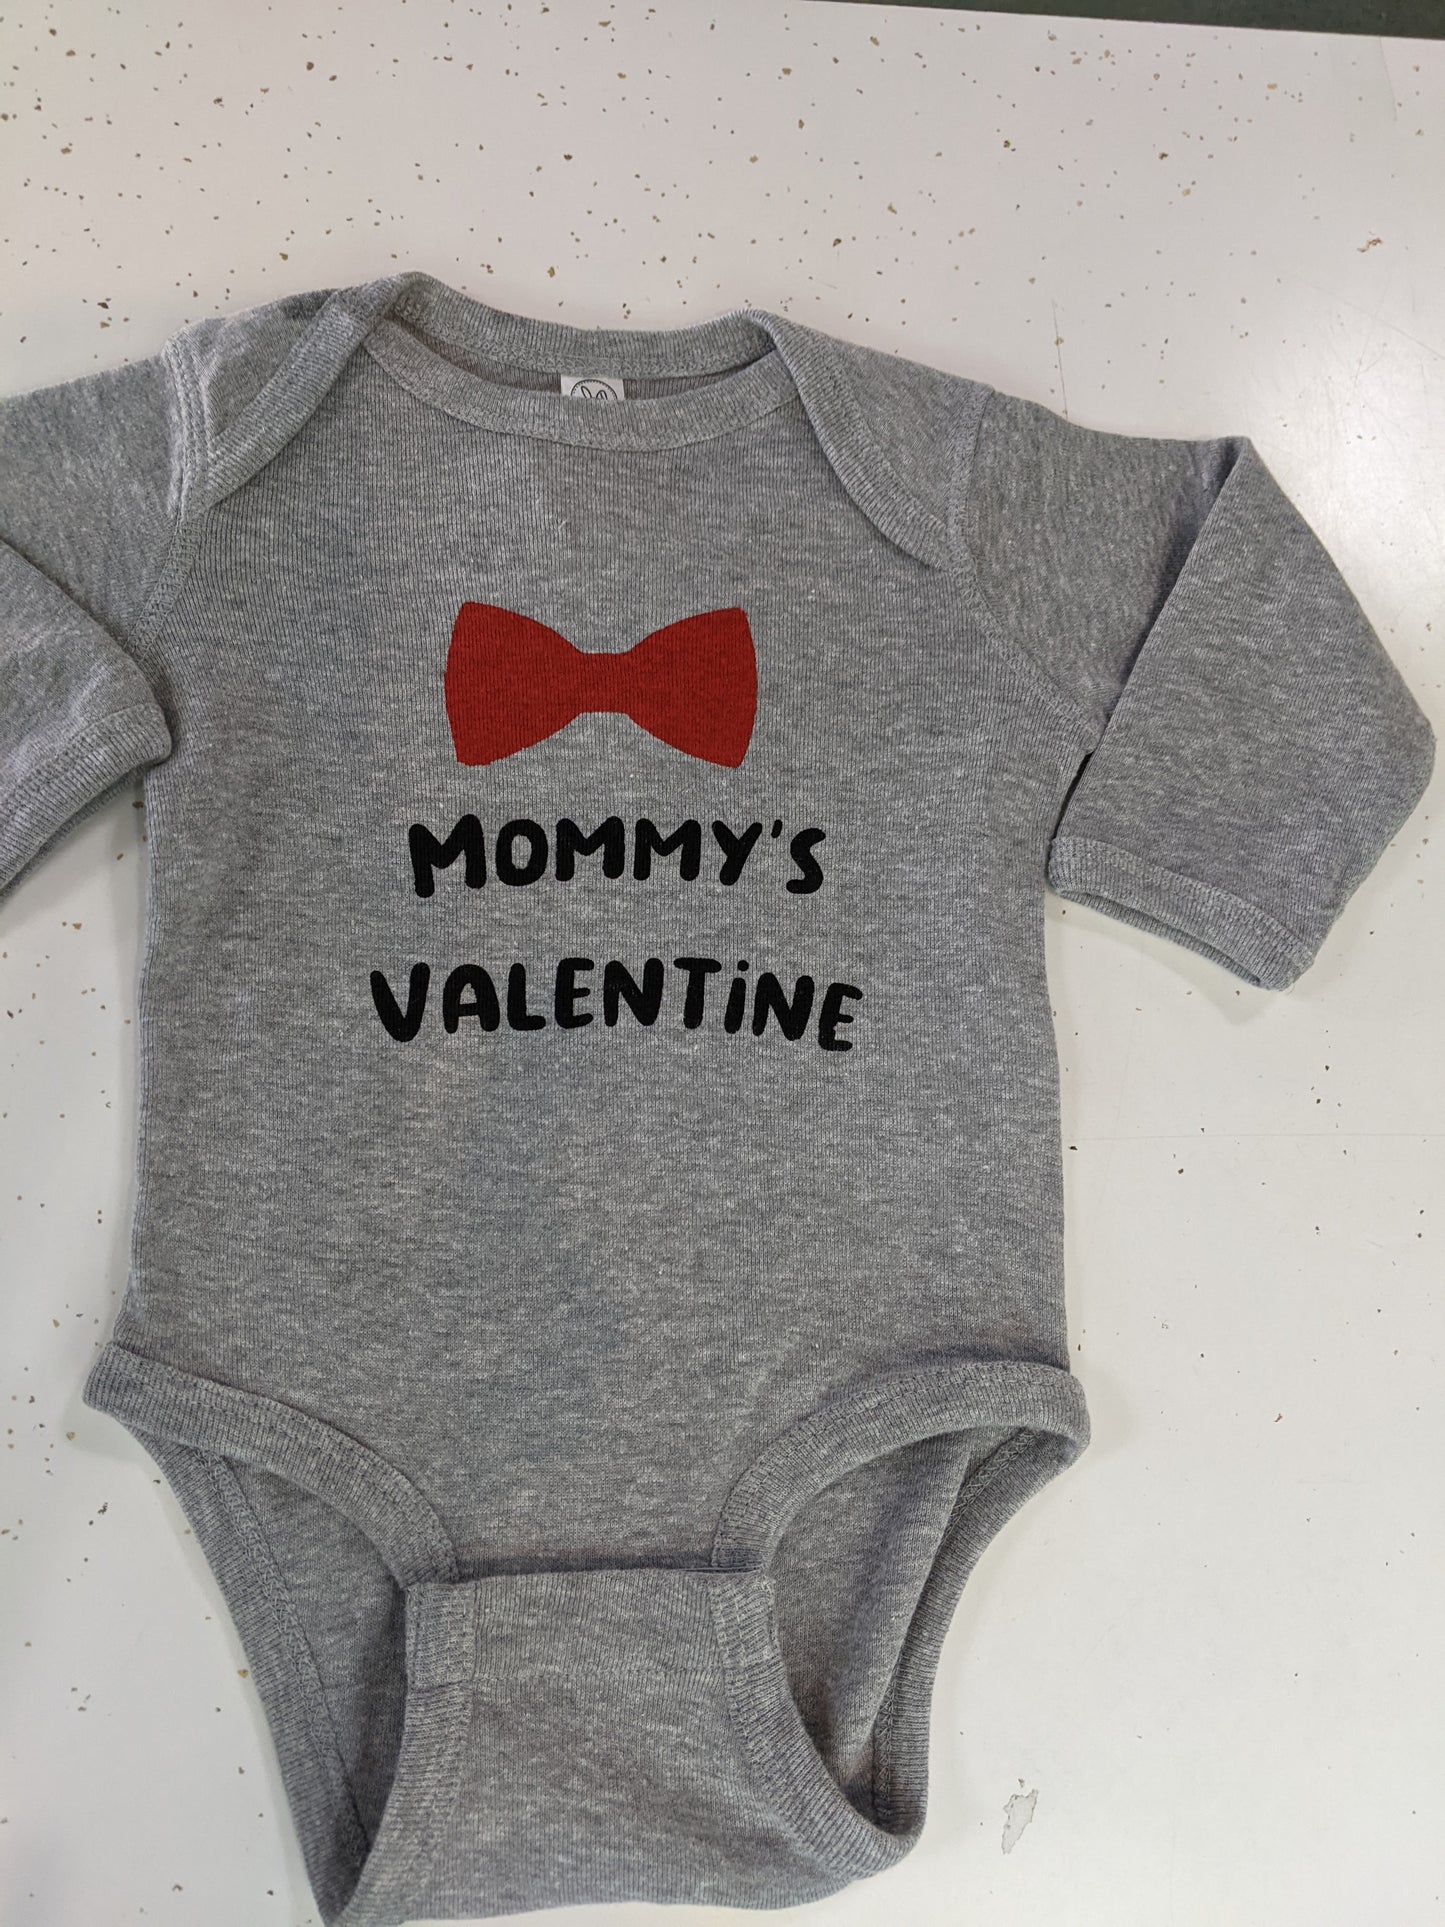 VALENTINES DAY: Mommy's Valentine Baby Bodysuit